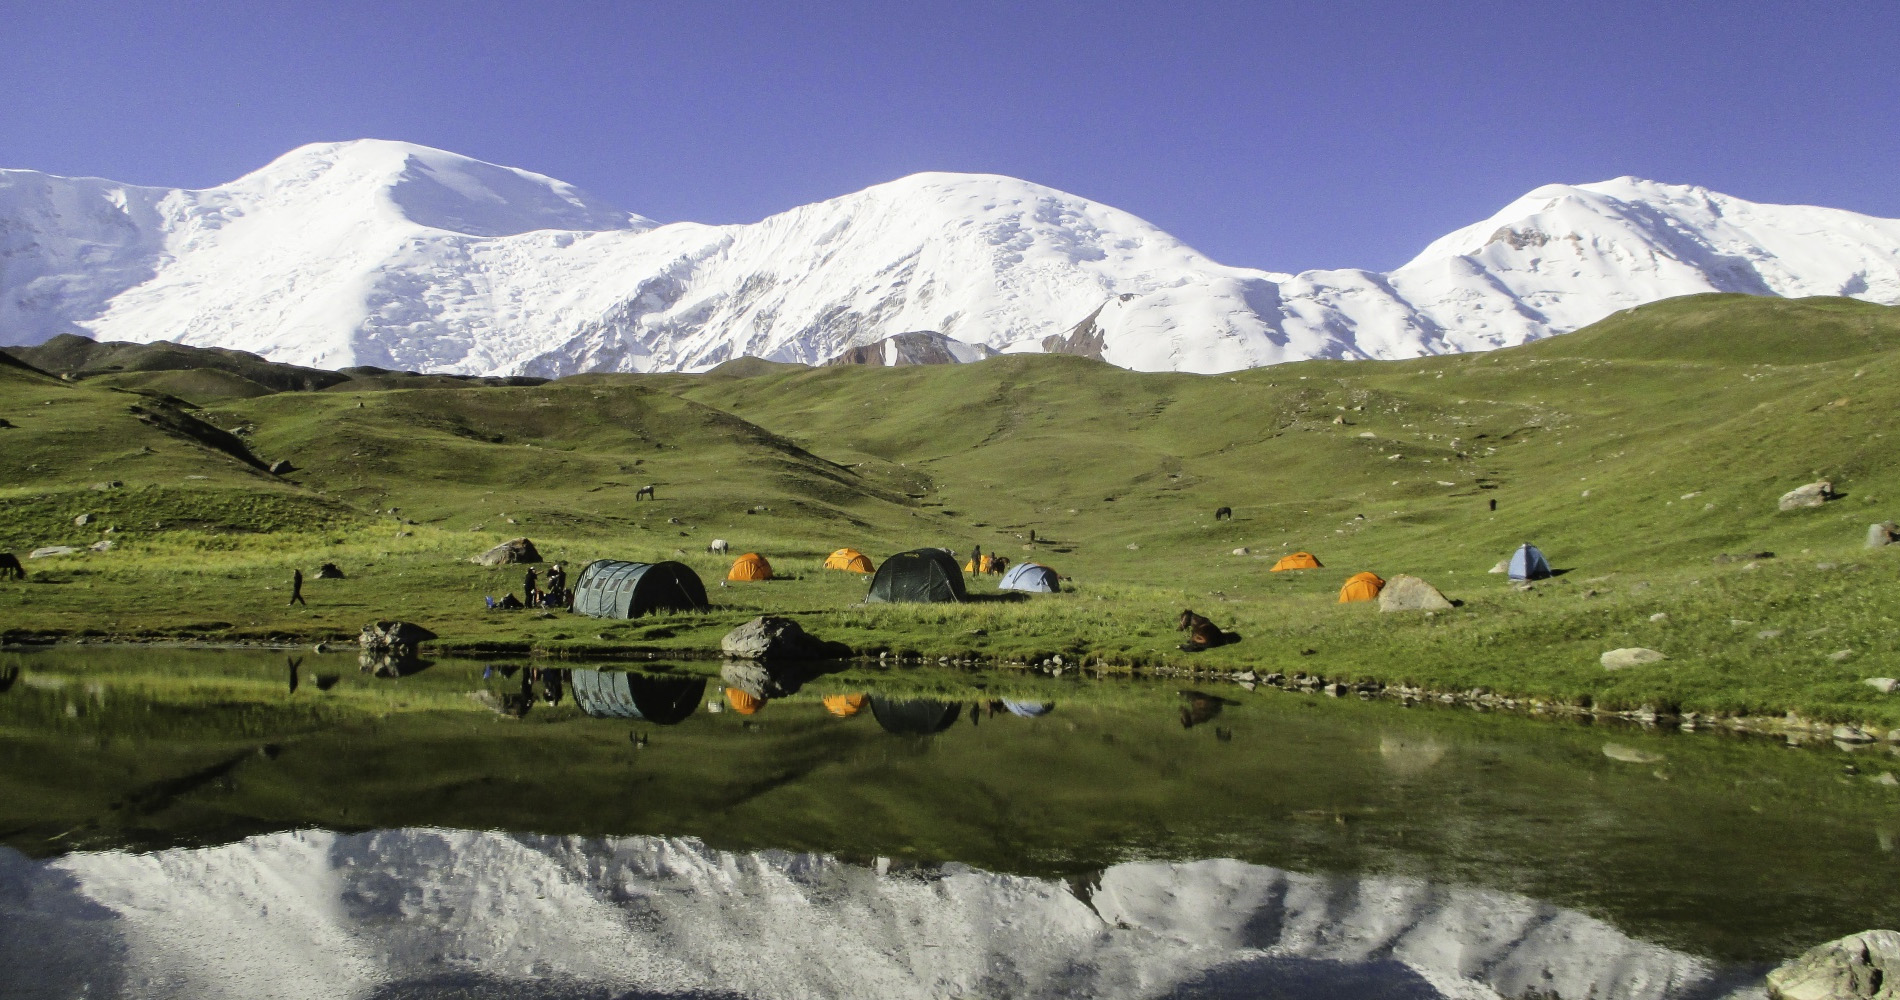 Camp de Katabechik - Kirghizie alain lenfant